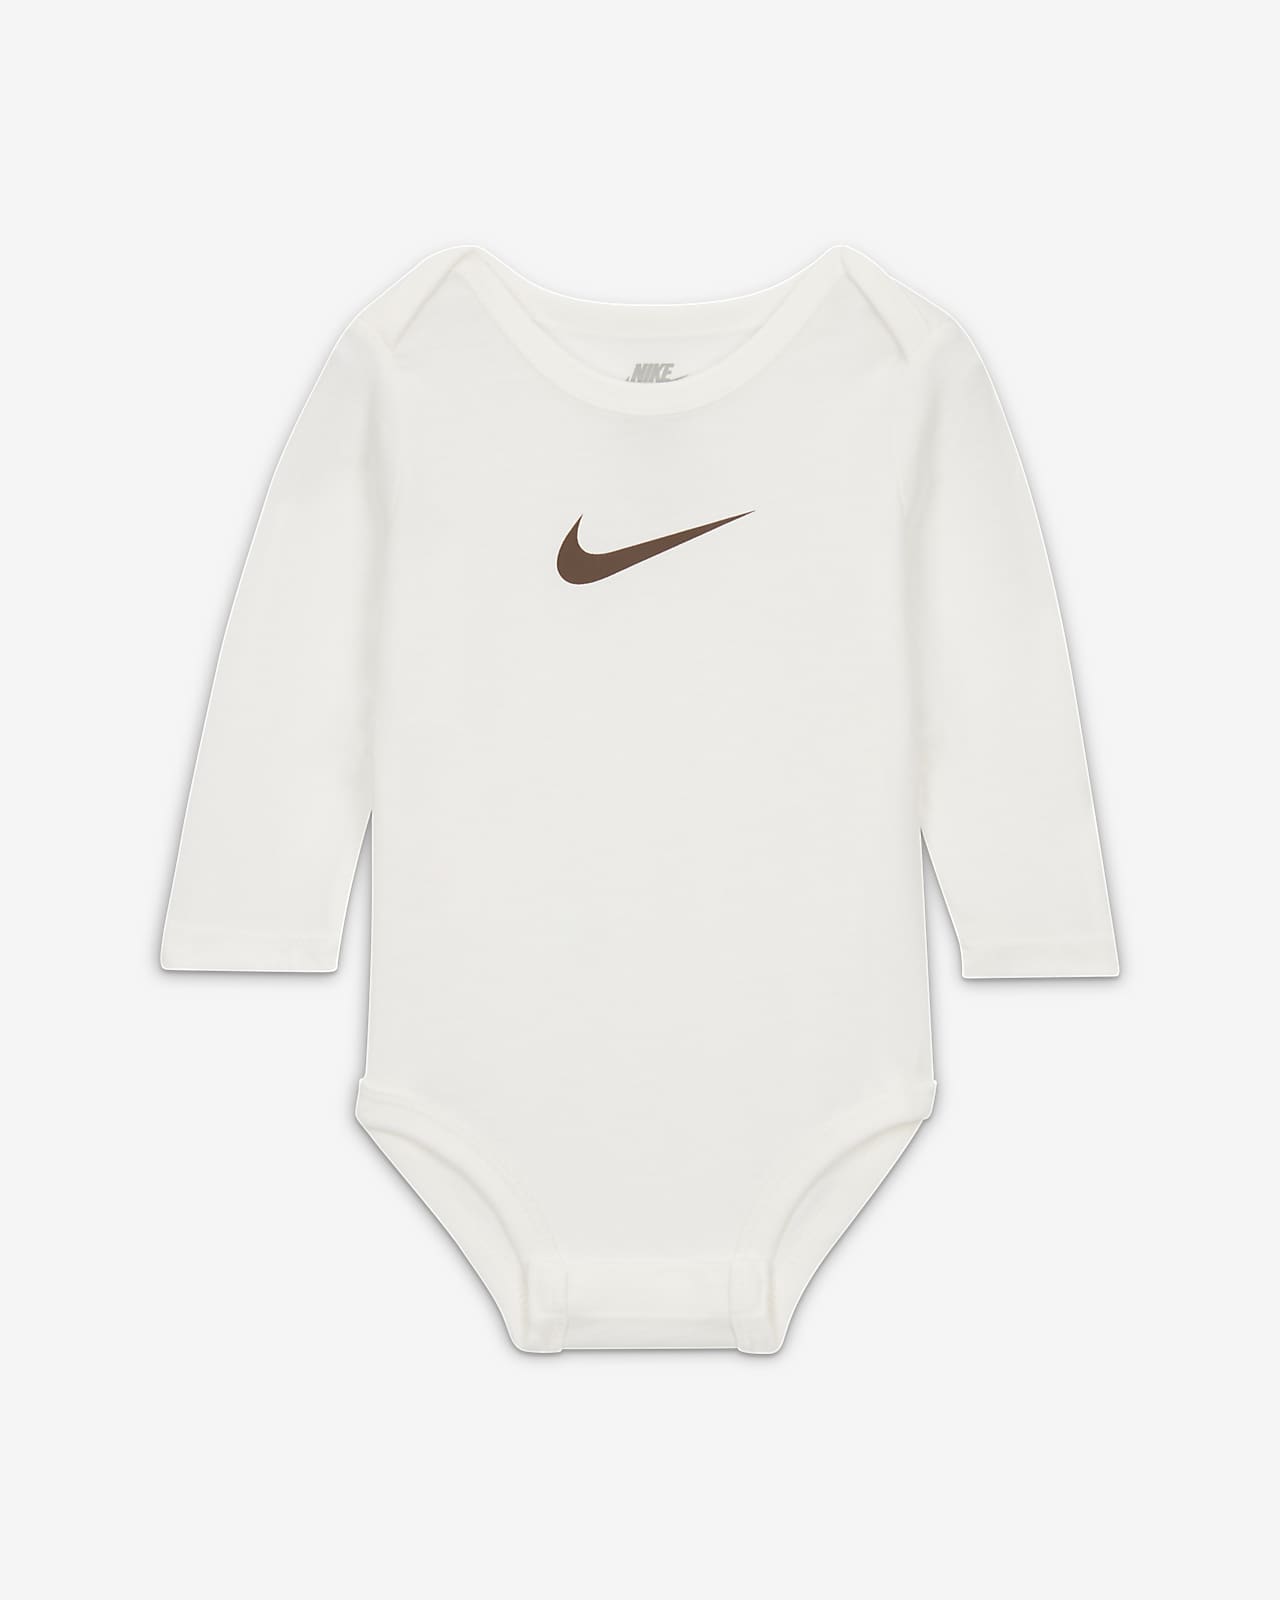 Nike E1D1 3-Pack Baby Bodysuit Bodysuits Pack